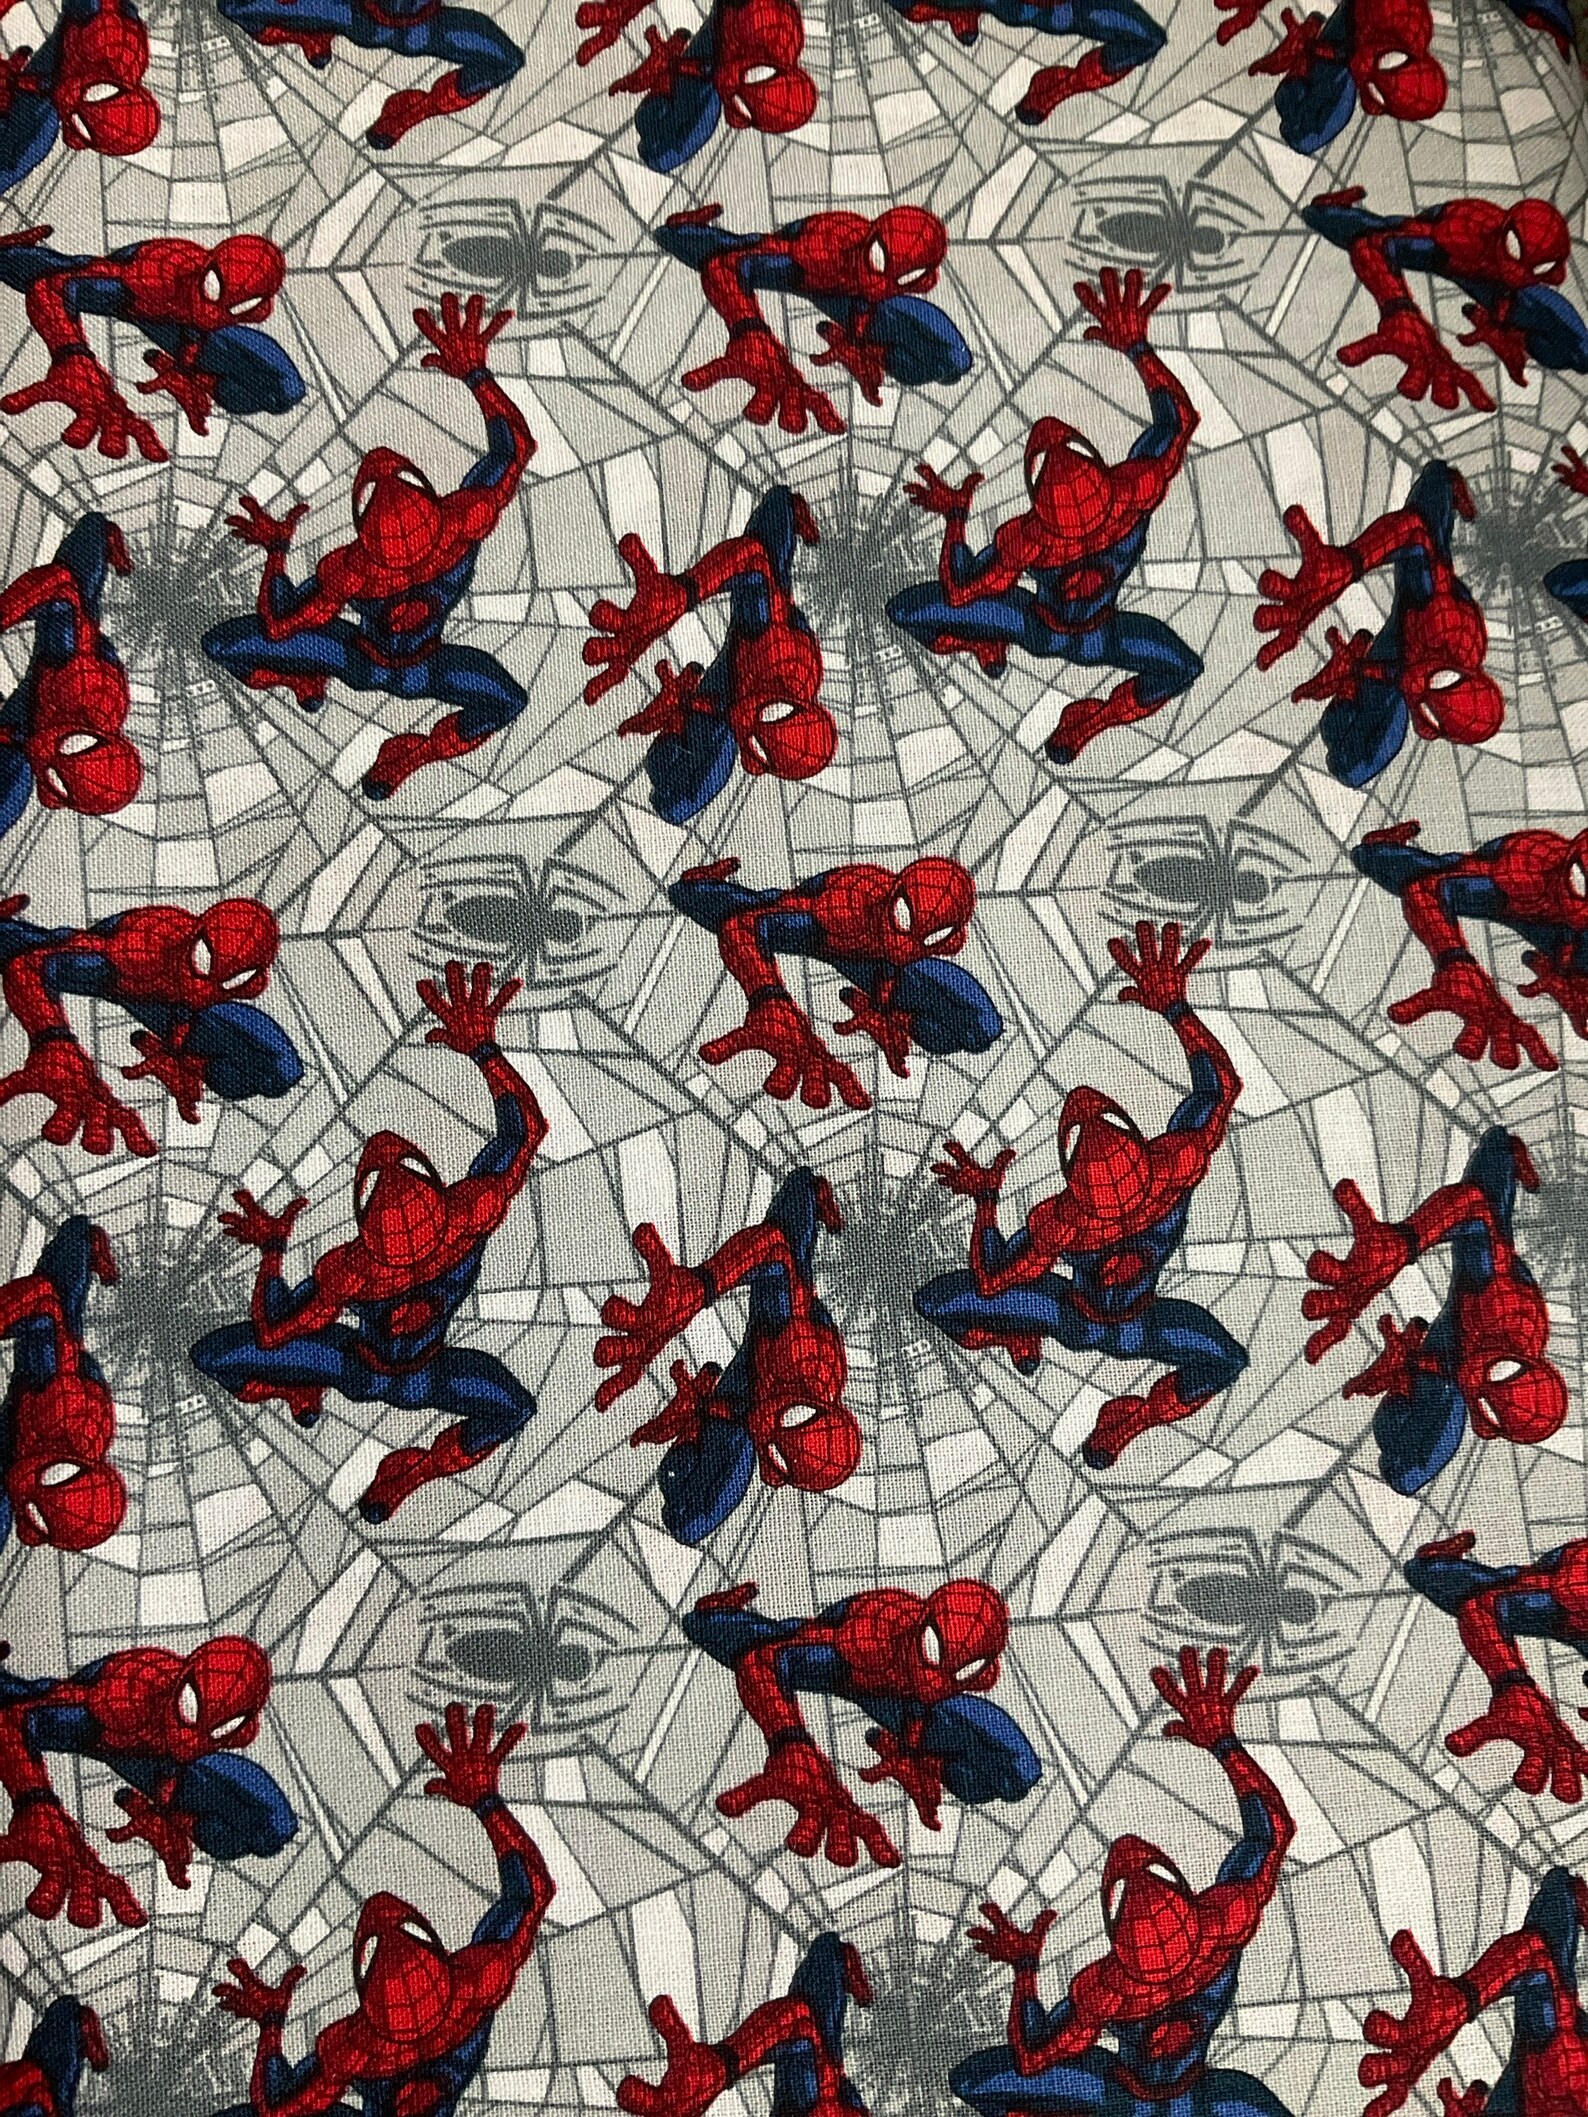 Spider-man Fabrics | Etsy